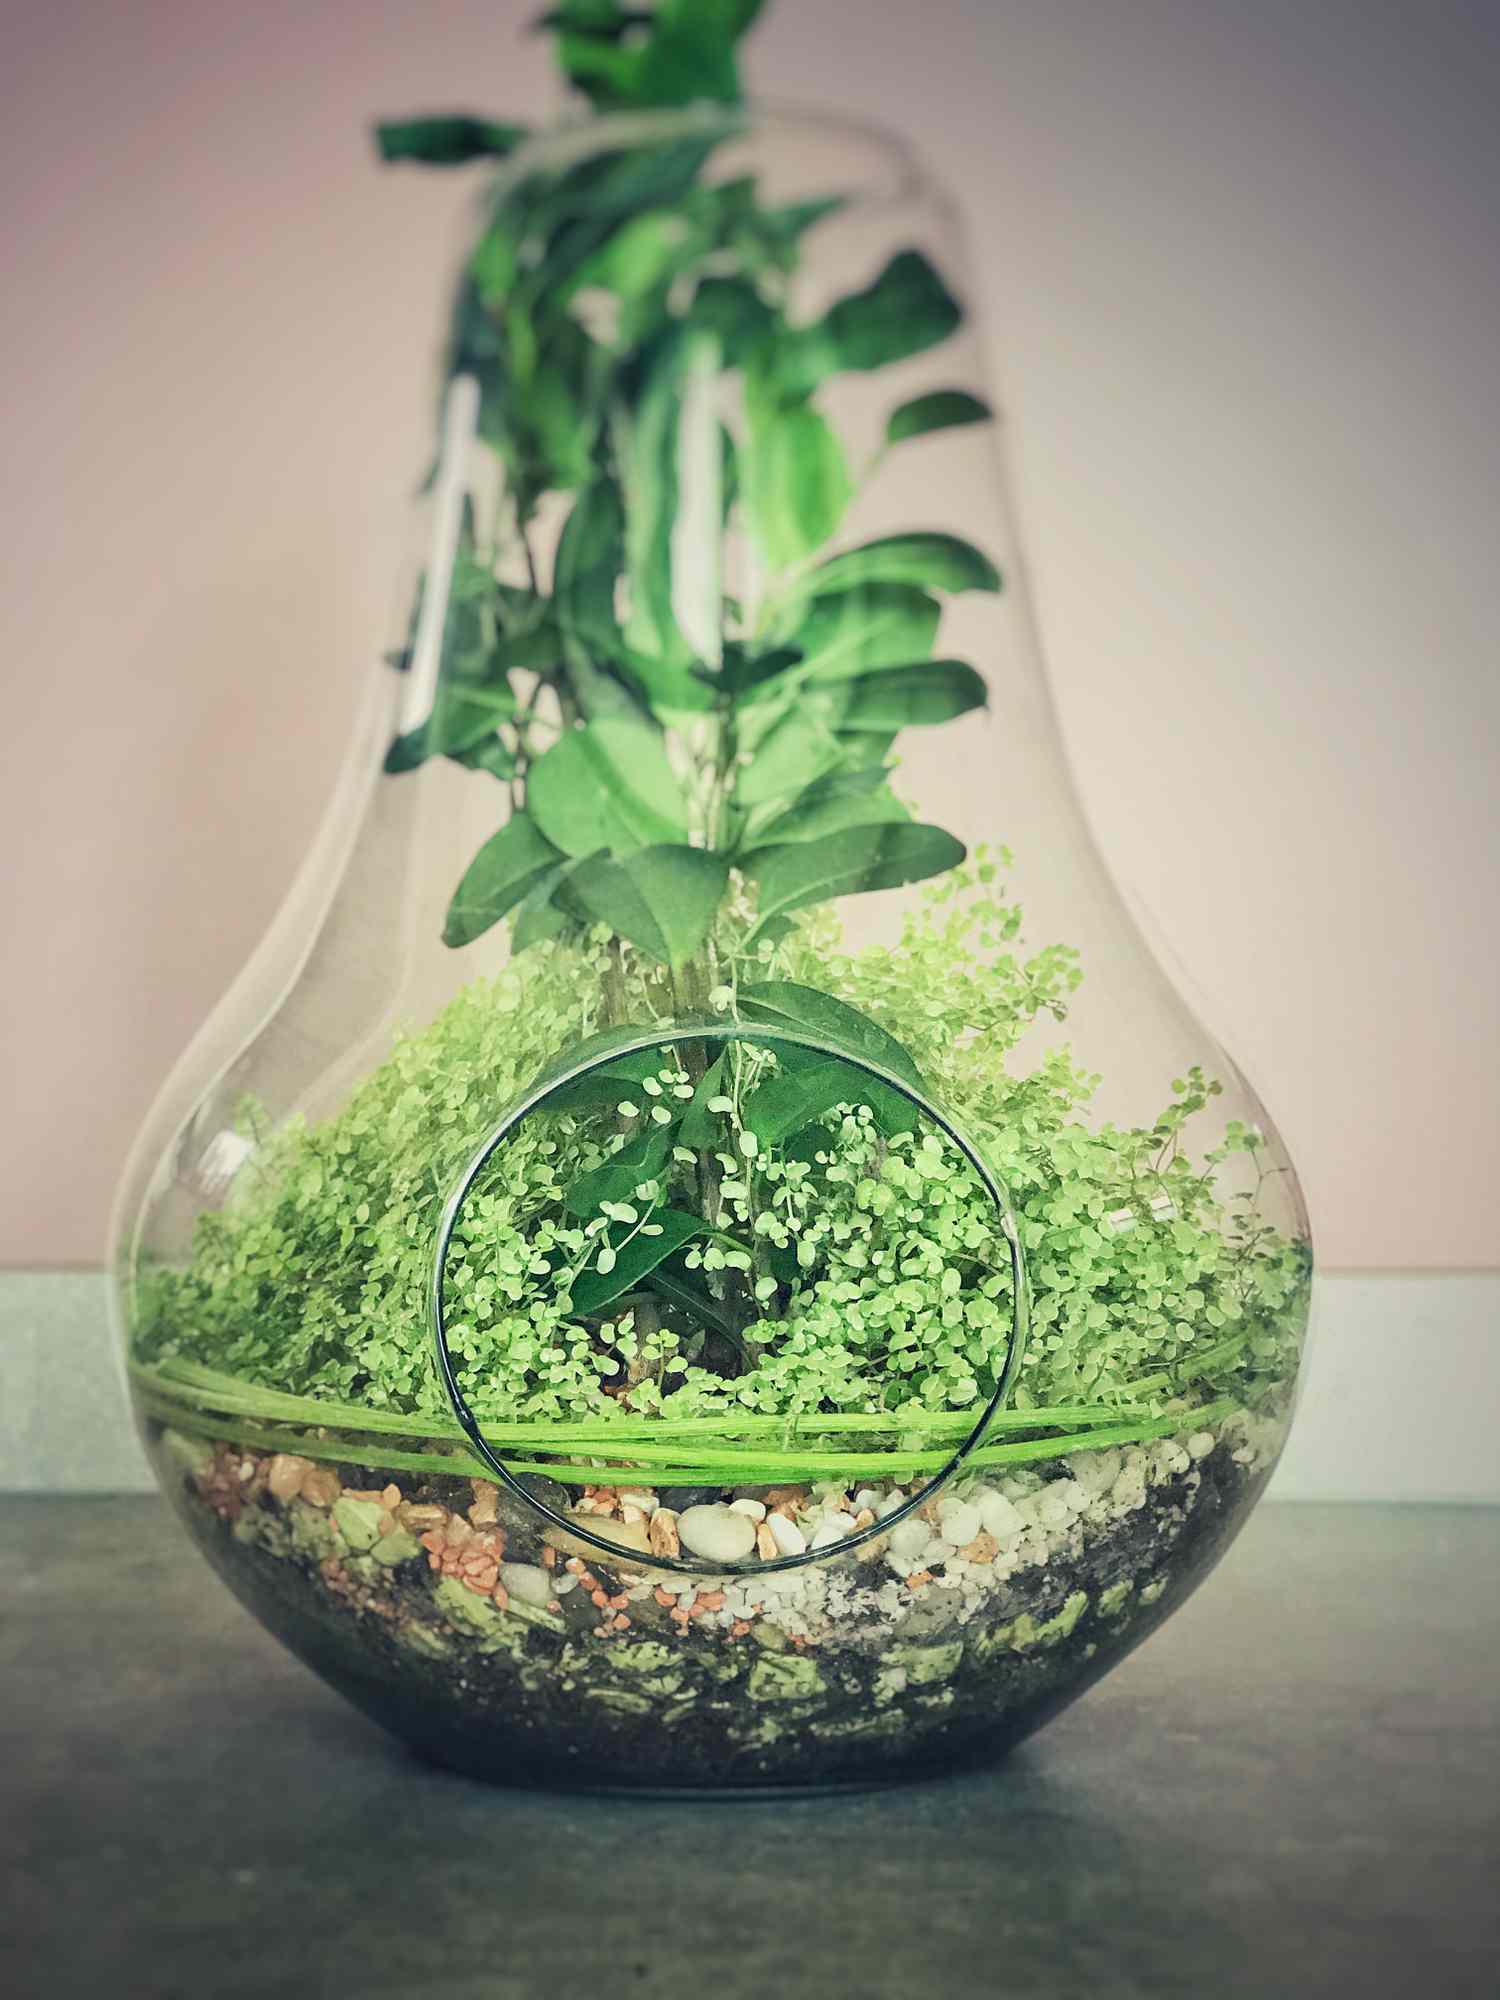 Pflanzenarrangement mit Babytränen (Soleirolia soleirolii) in einer dekorativen Glasvase